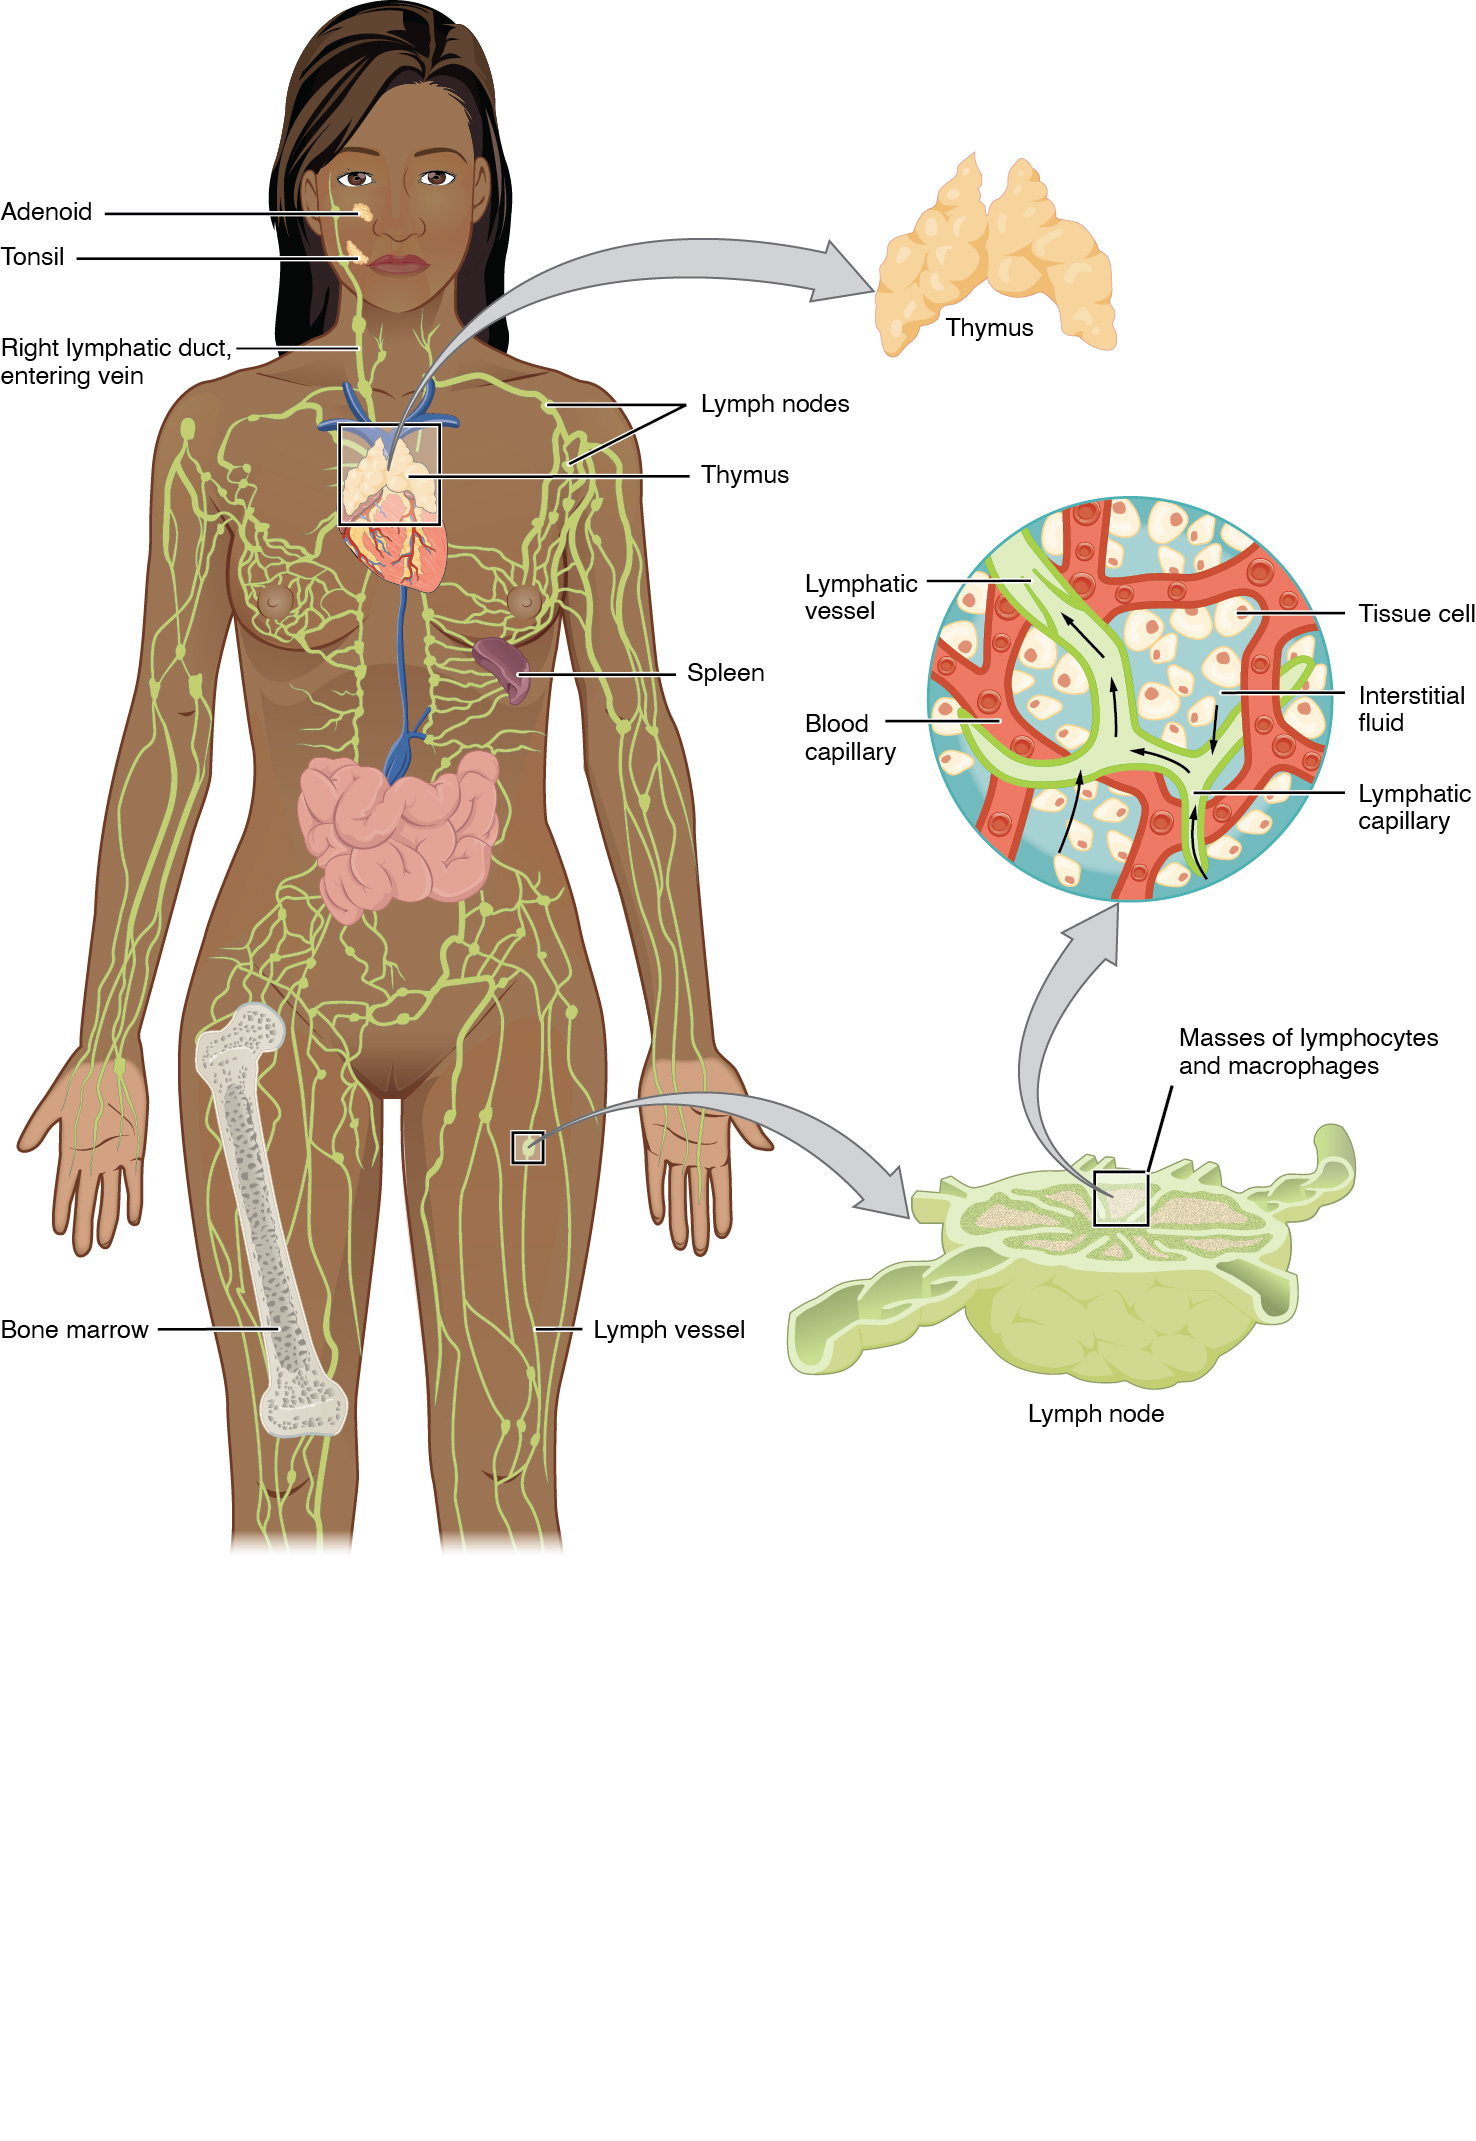 O painel esquerdo mostra um corpo humano feminino e todo o sistema linfático é mostrado. O painel direito mostra imagens ampliadas do timo e do linfonodo. Todas as partes principais do sistema linfático são rotuladas.